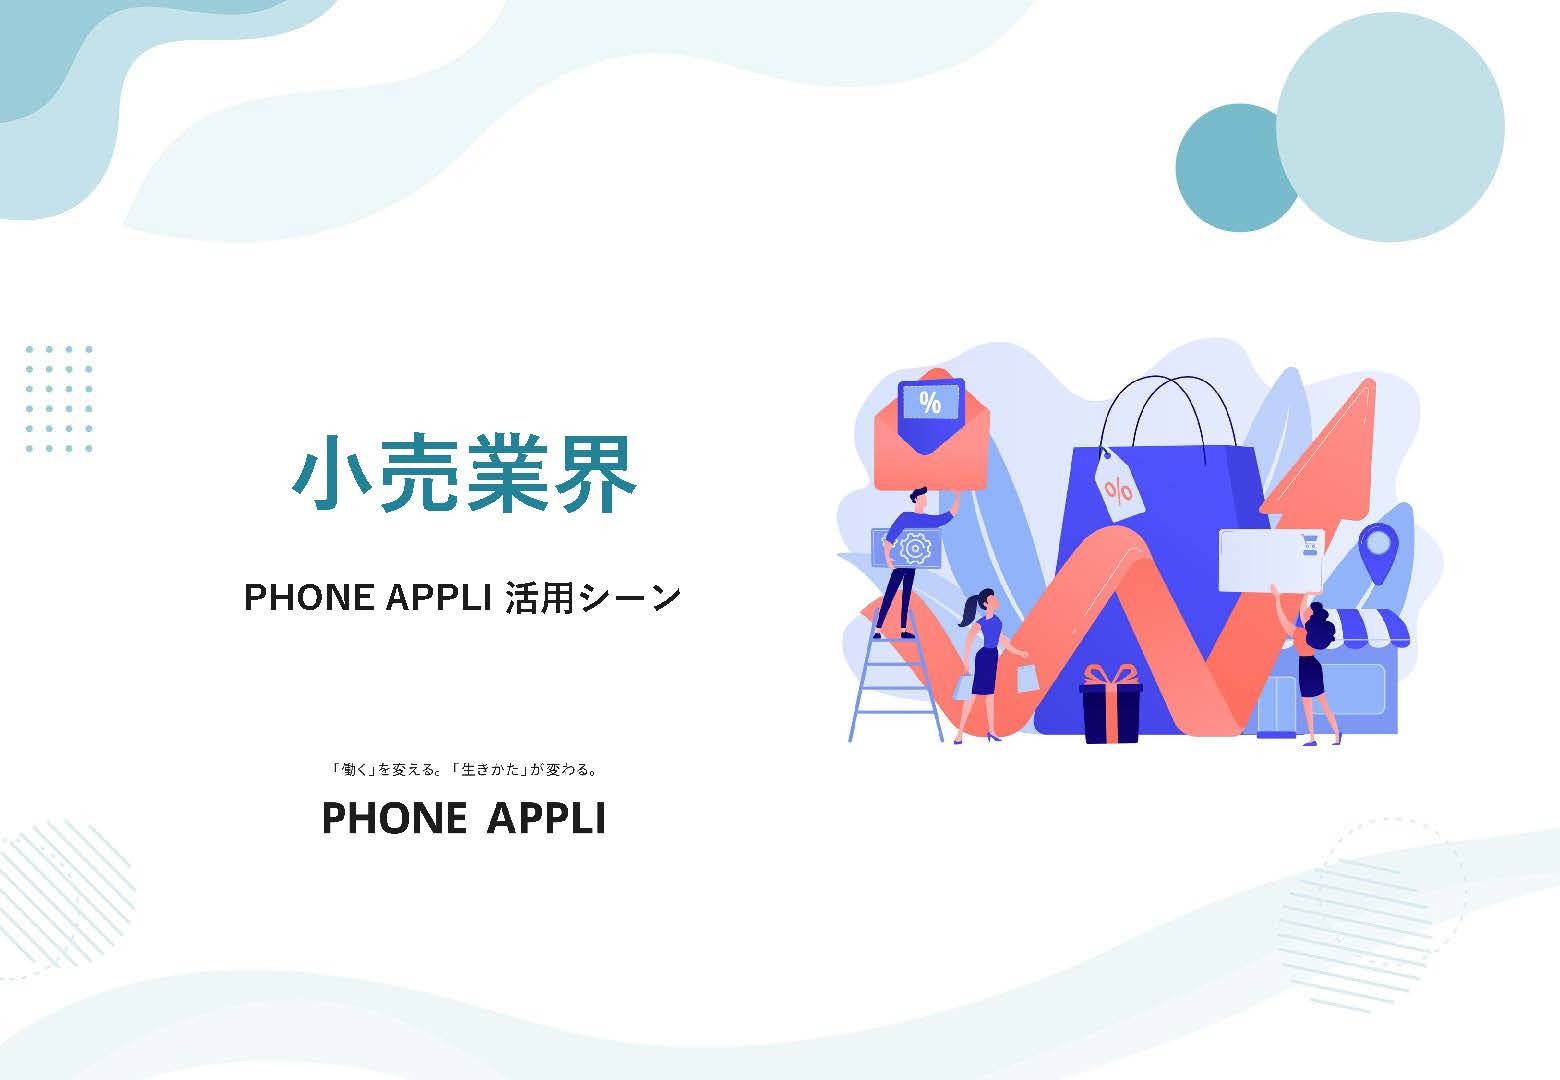 【小売業界向け】PHONE APPLI活用シーン